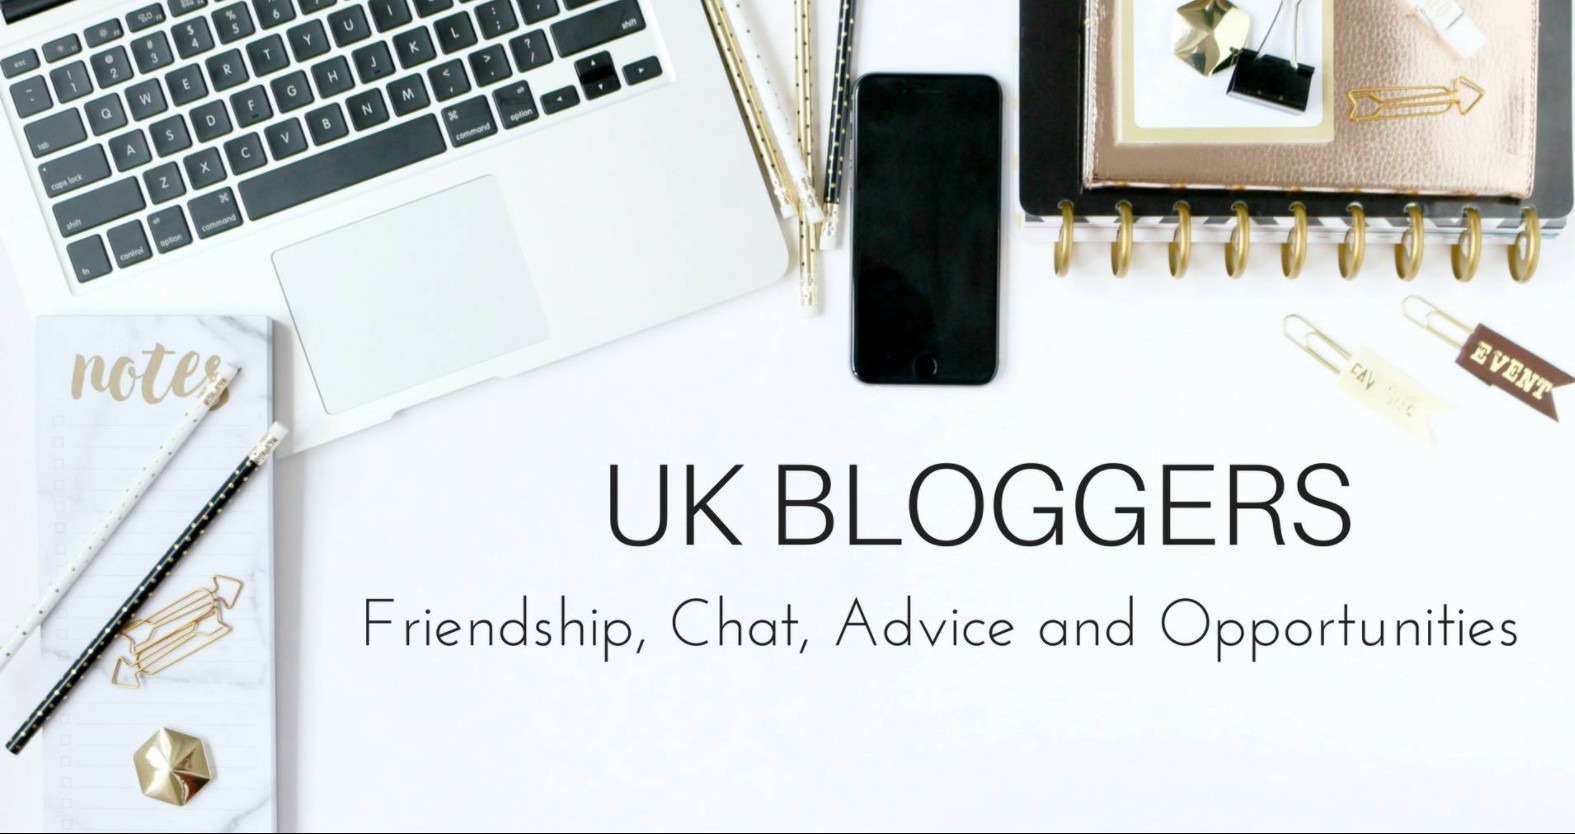 <img src="uk.jpg" alt="uk bloggers make money freelancing online"/> 